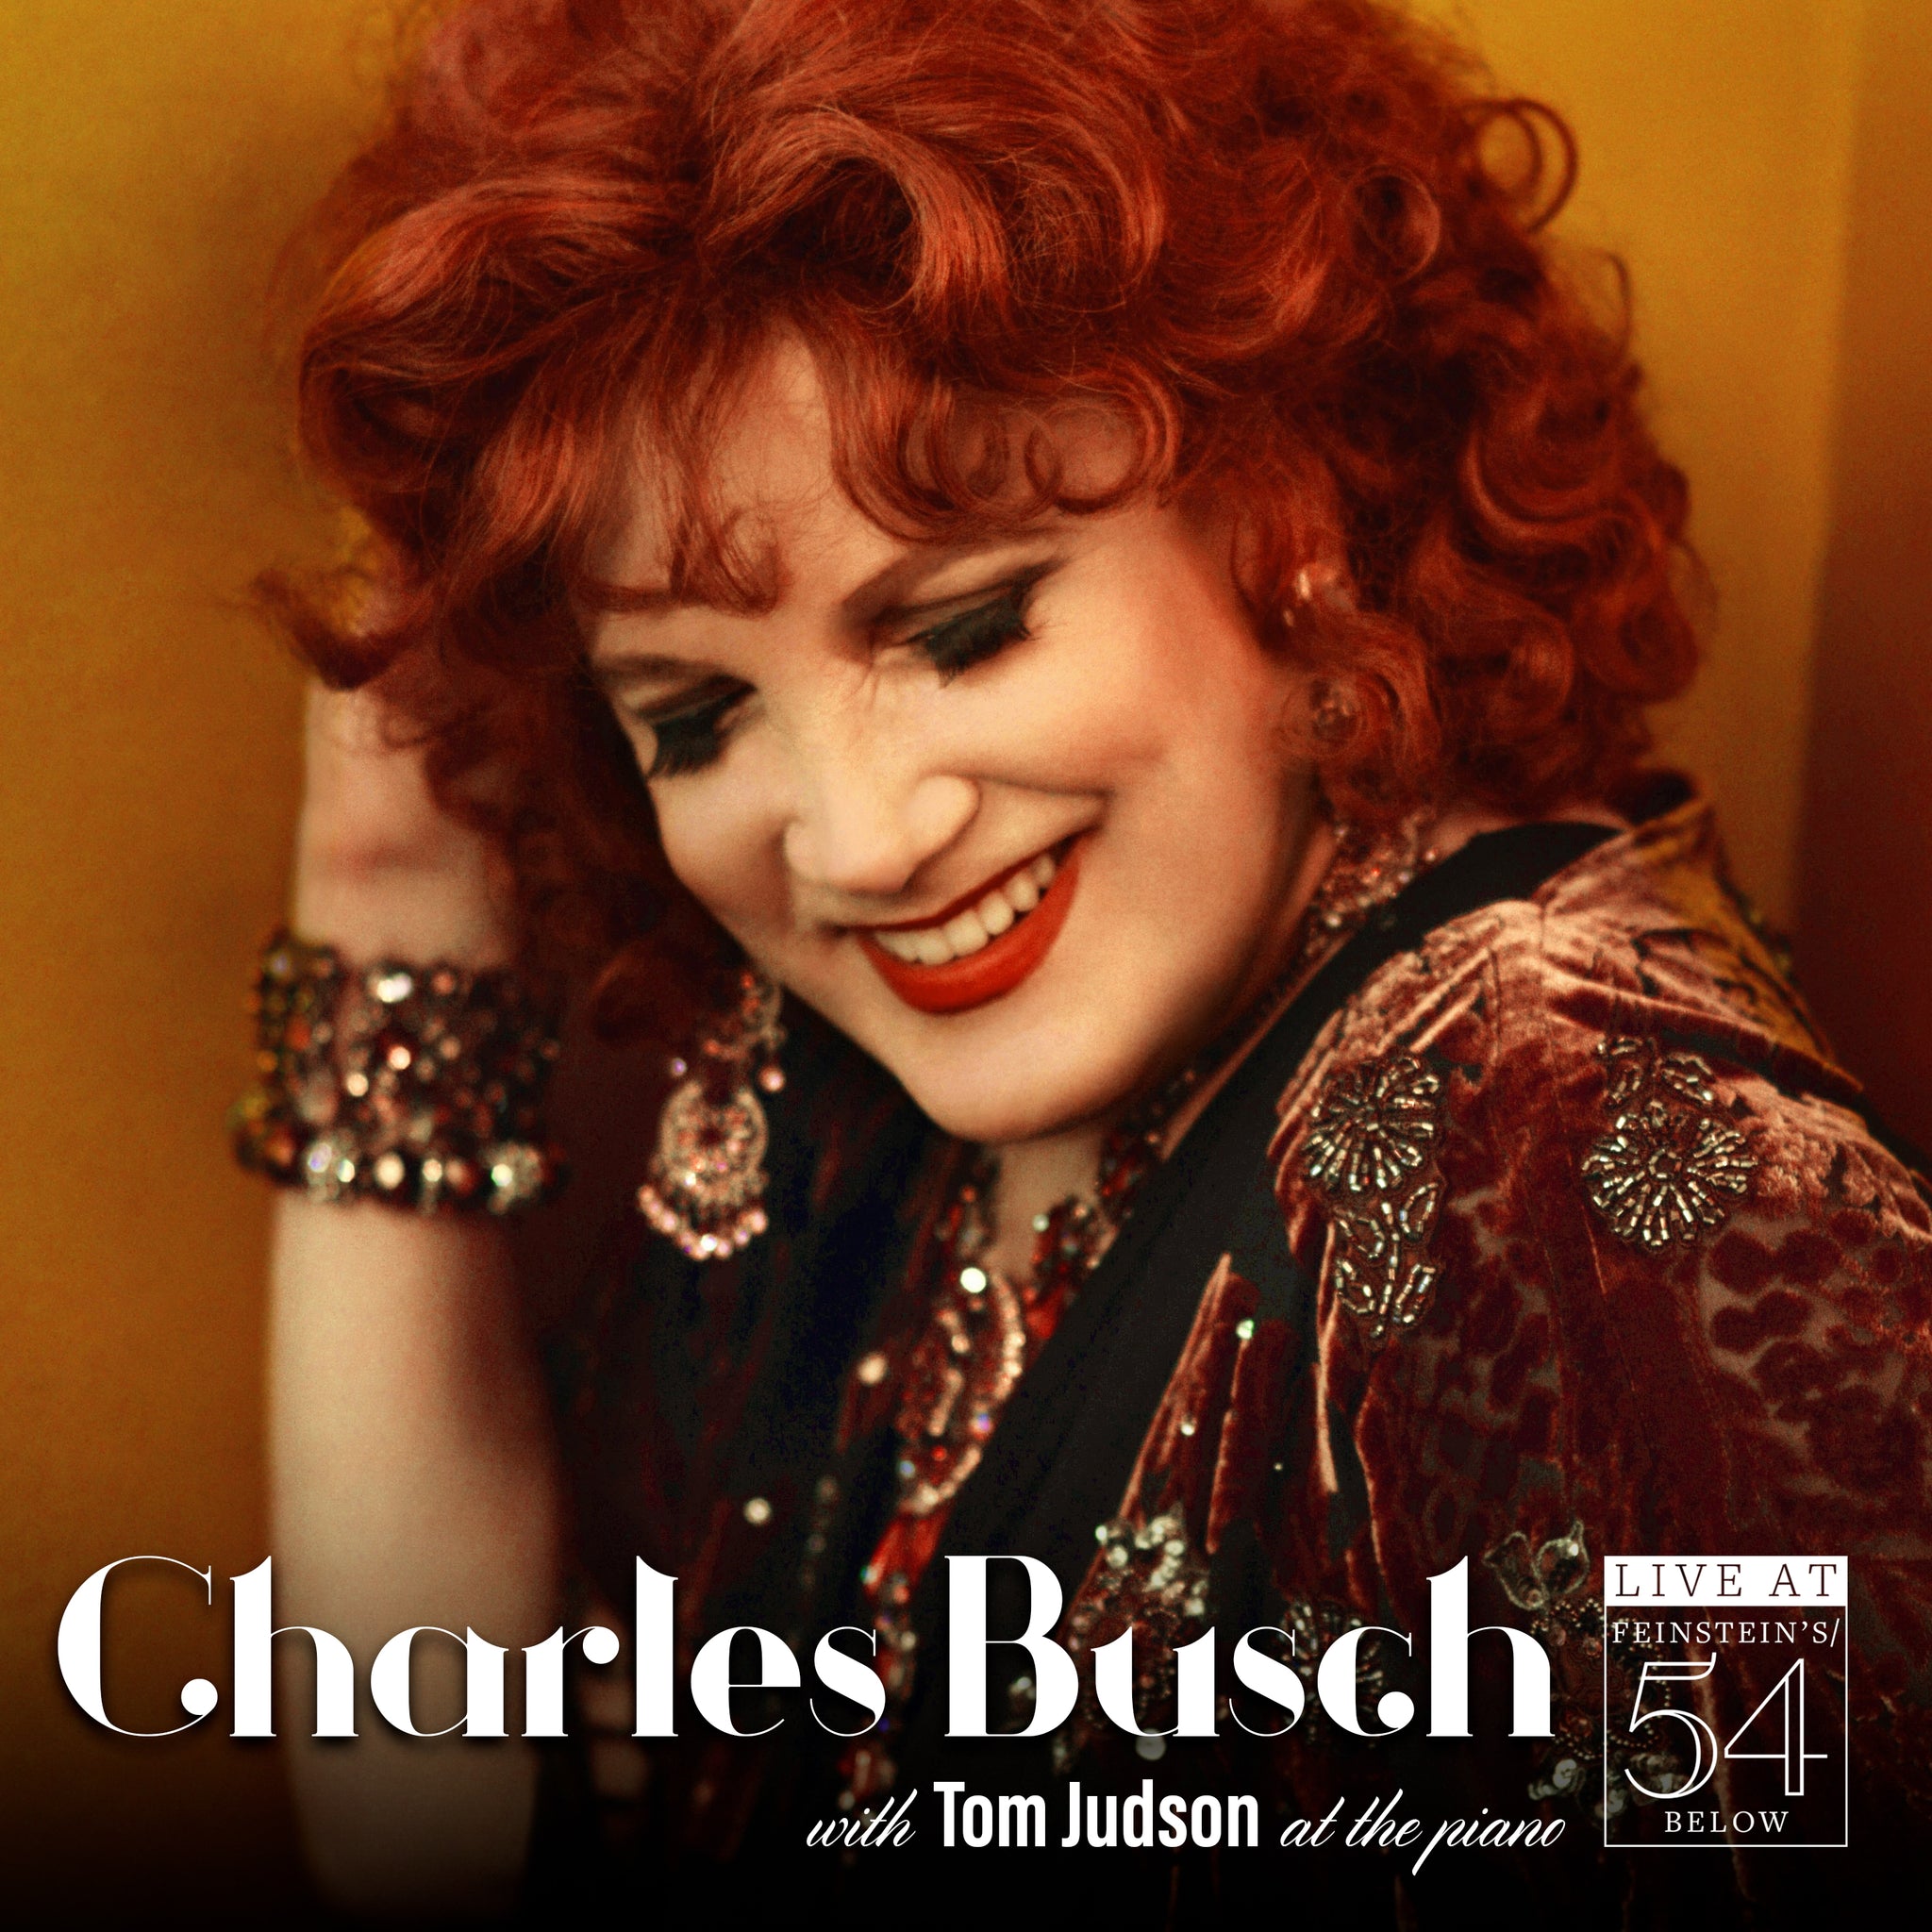 Charles Busch – Live at Feinstein's/54 Below [CD]